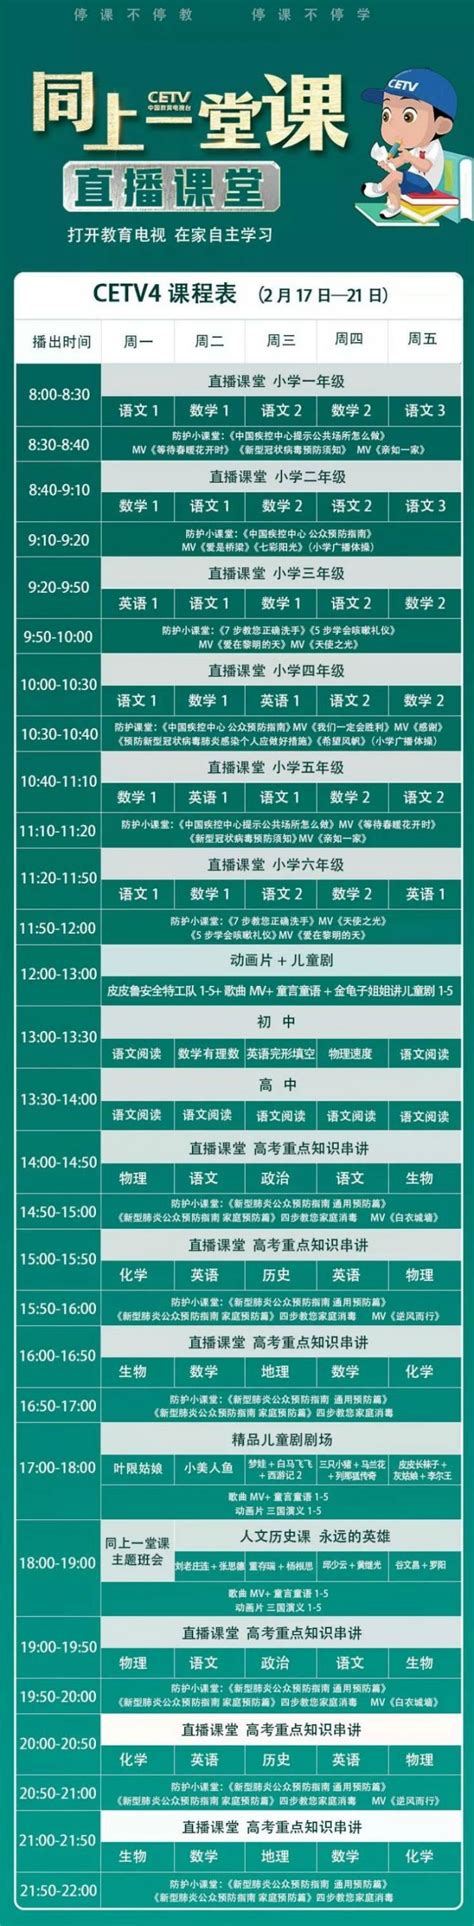 中国教育电视台四频道同上一堂课完整课程表 - 上海本地宝